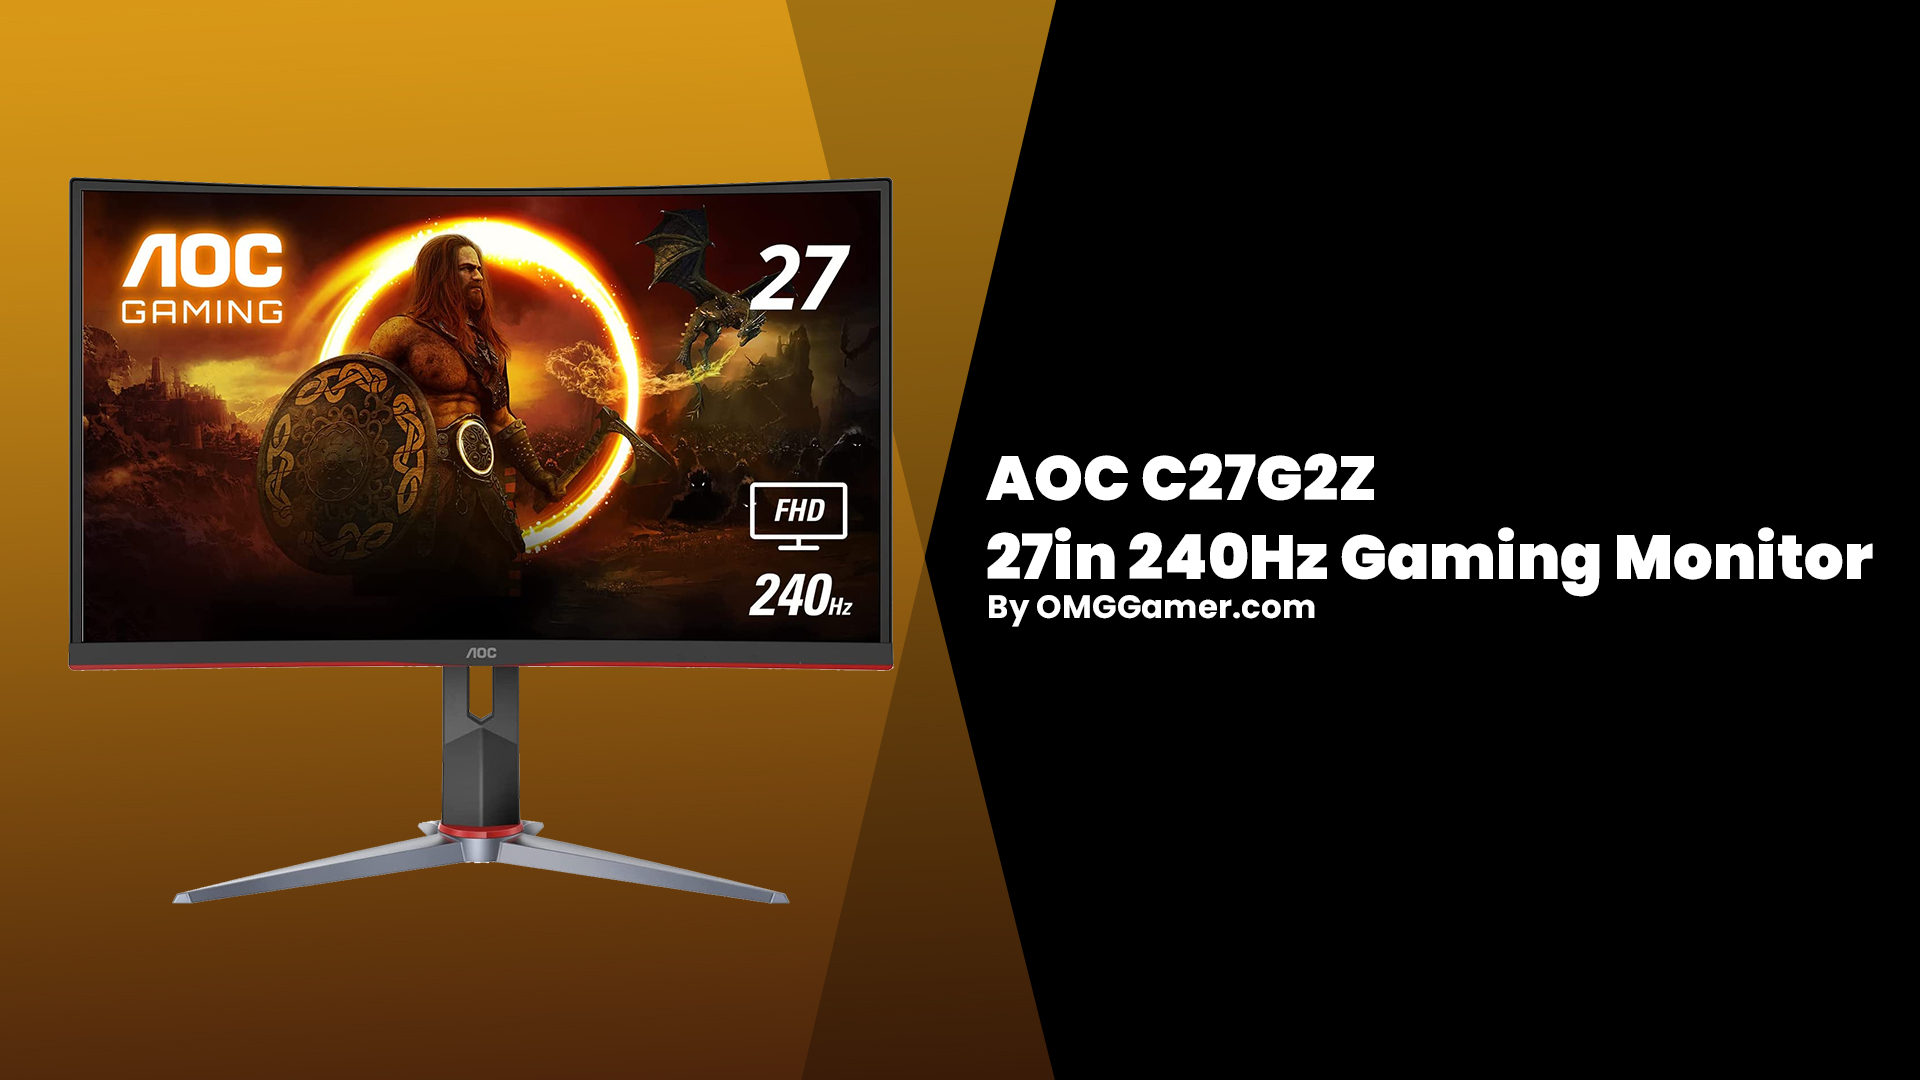 AOC C27G2Z 27in 240Hz Gaming Monitor